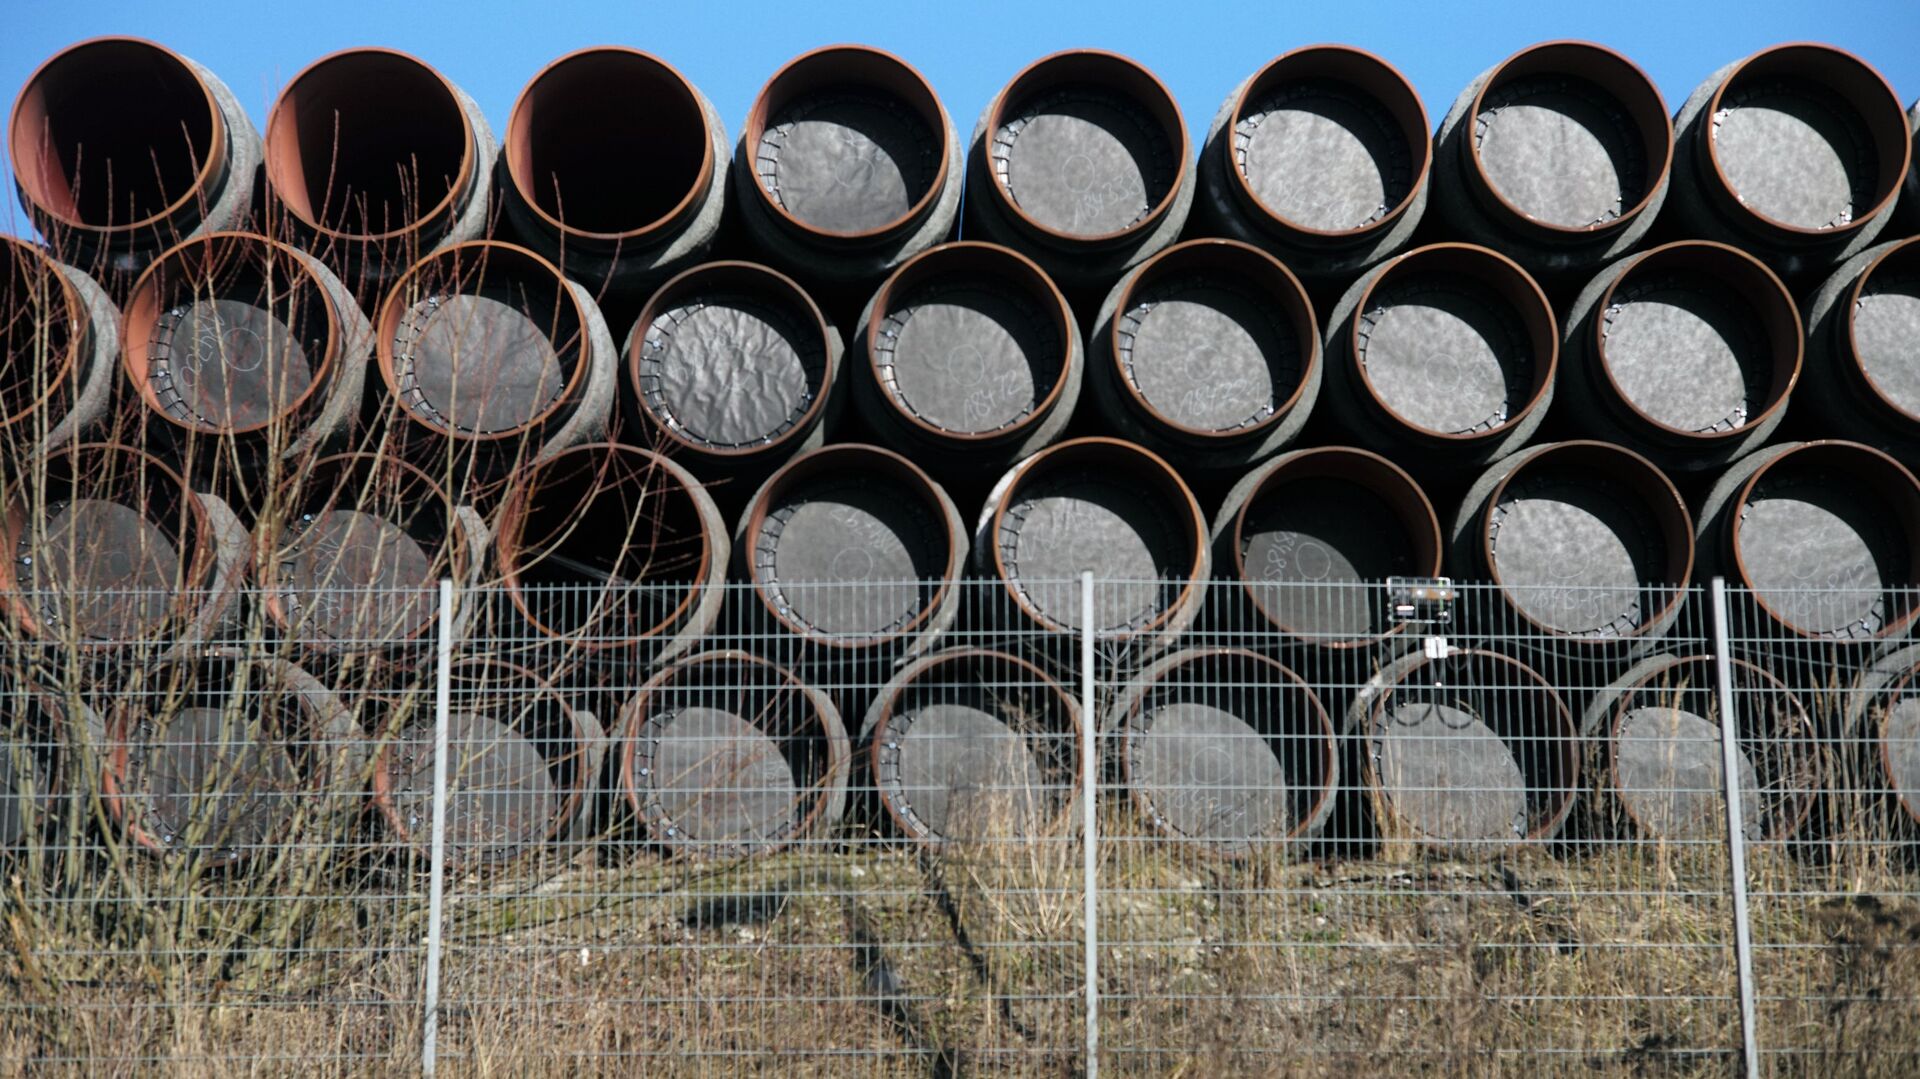 Склад труб для строительства газопровода Северный поток - 2 в порту города Засниц в Германии - Sputnik Latvija, 1920, 04.09.2021